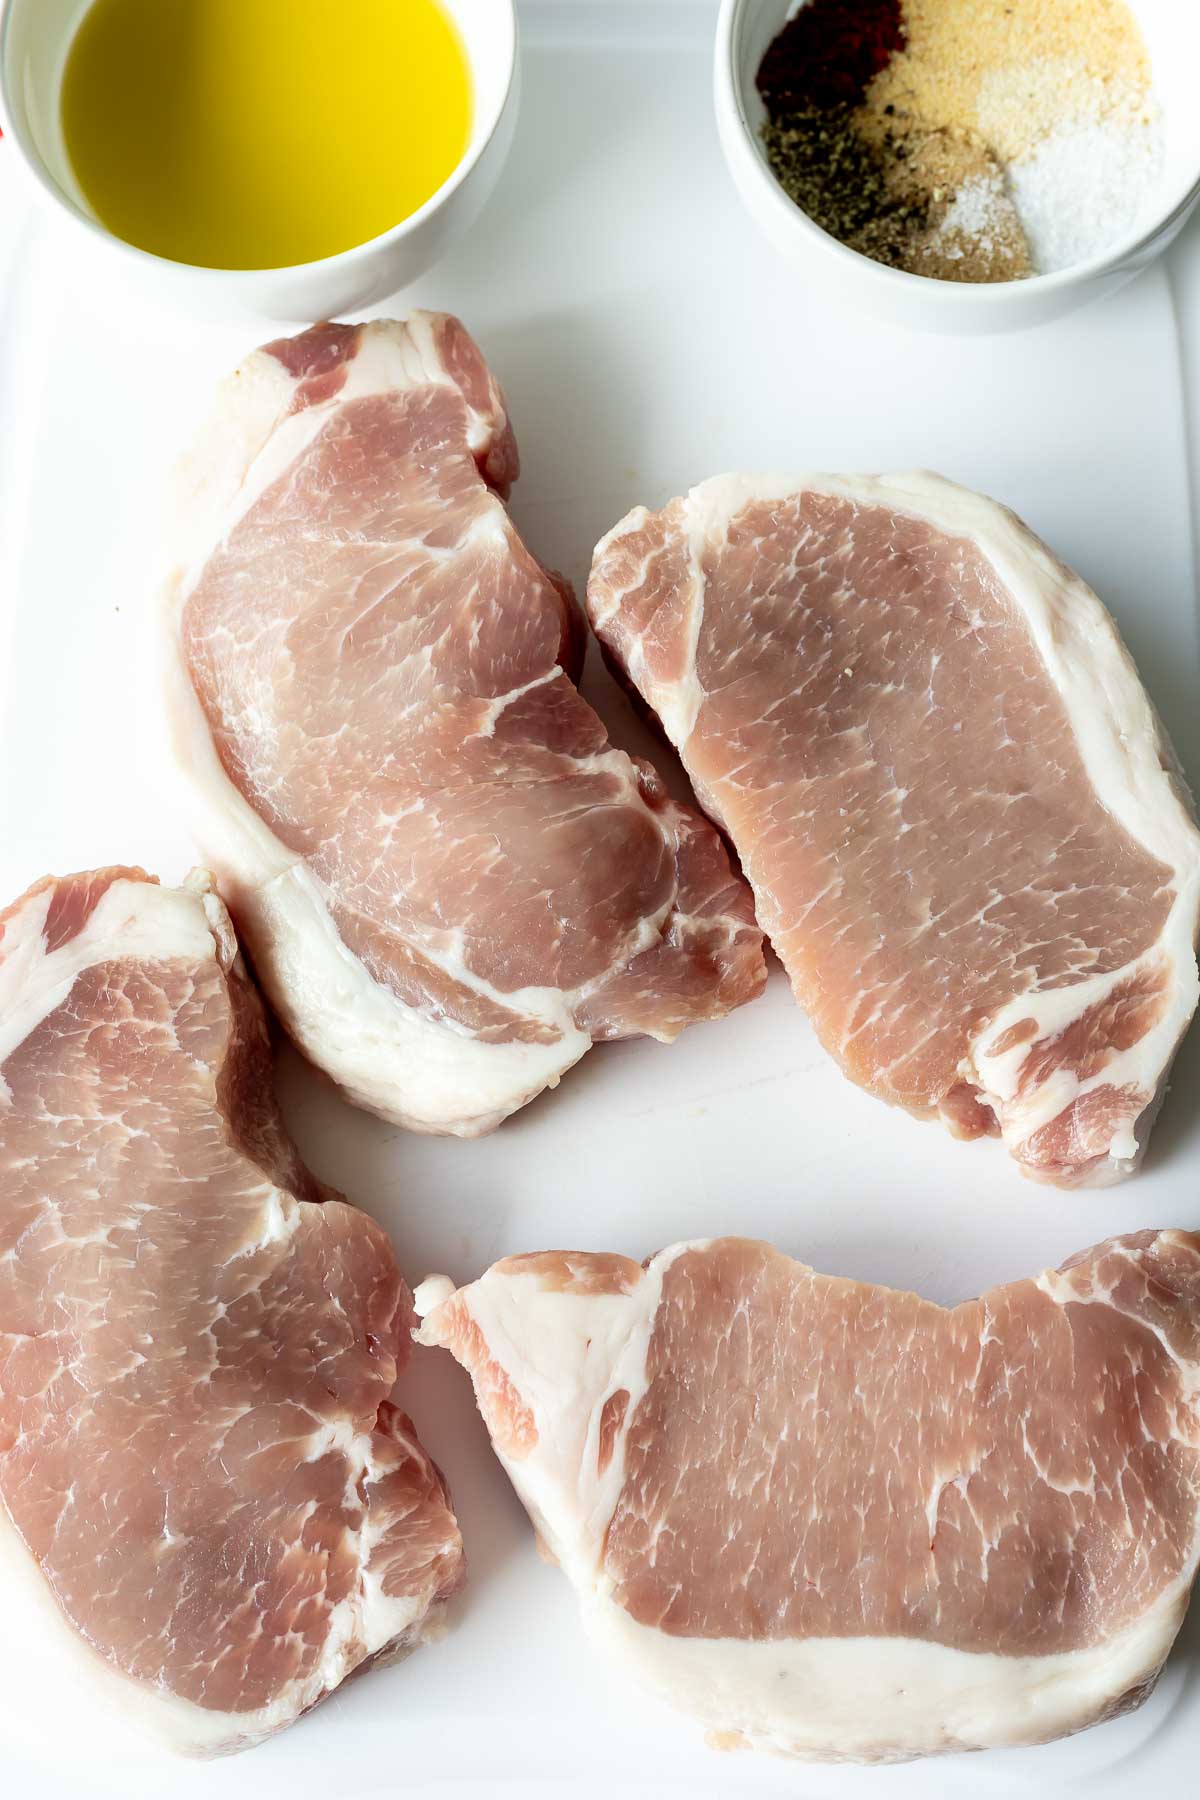 raw pork chops, oil and spice rub on cutting board